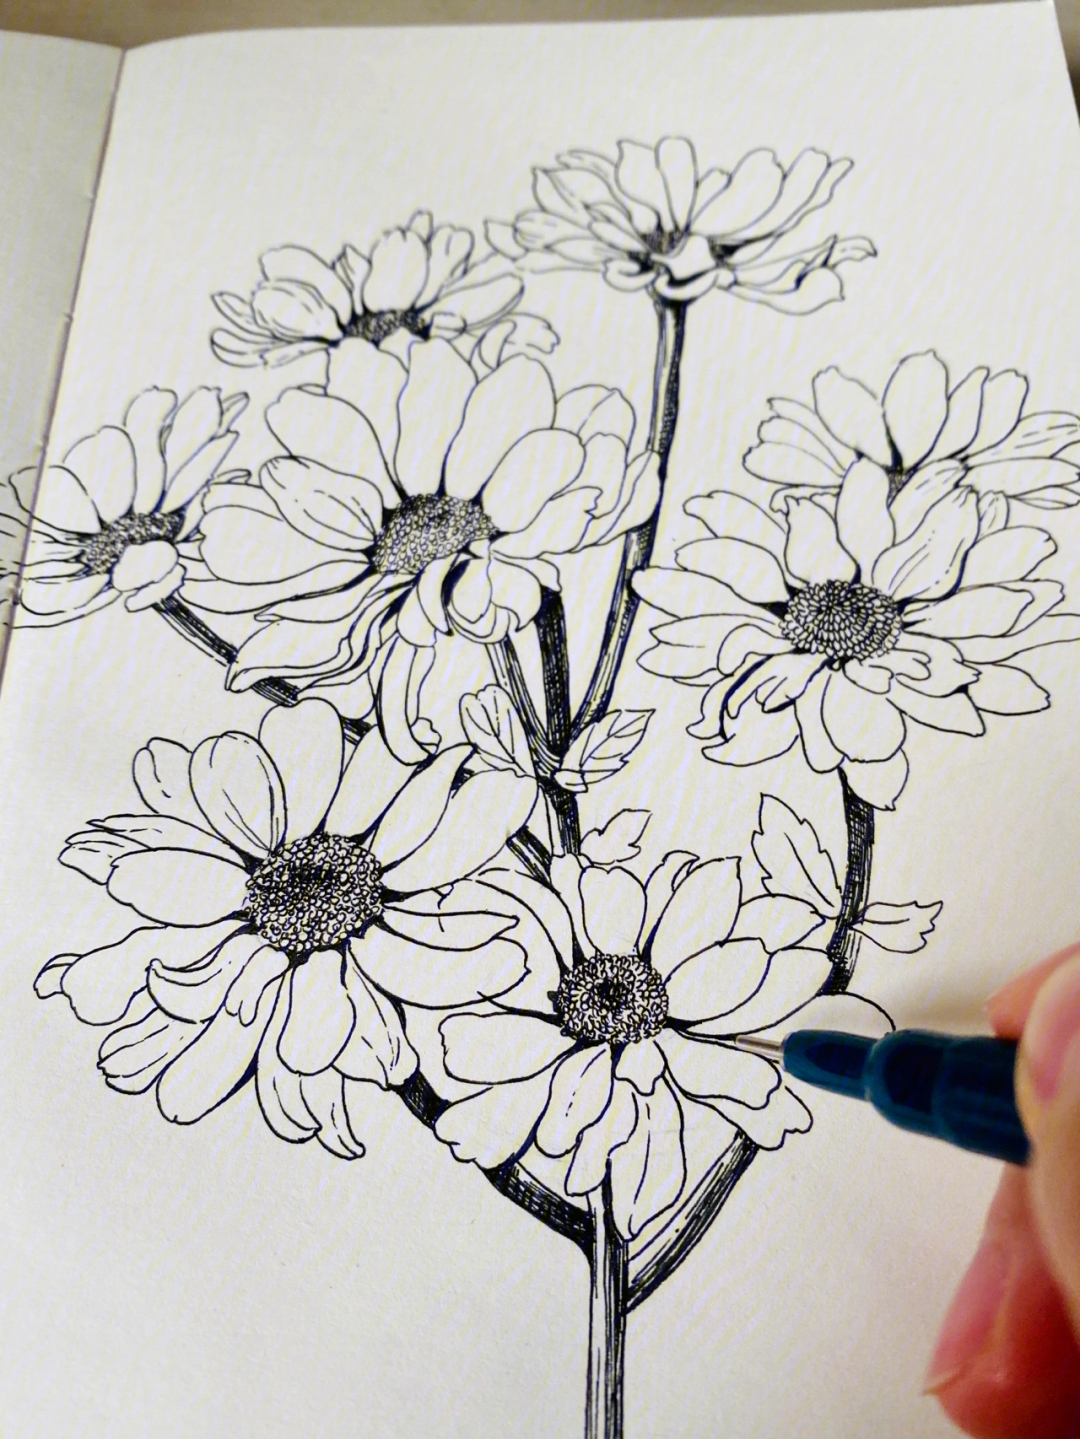 花卉速写思路:16615先用铅笔大致圈一下枝干走向和花朵位置266